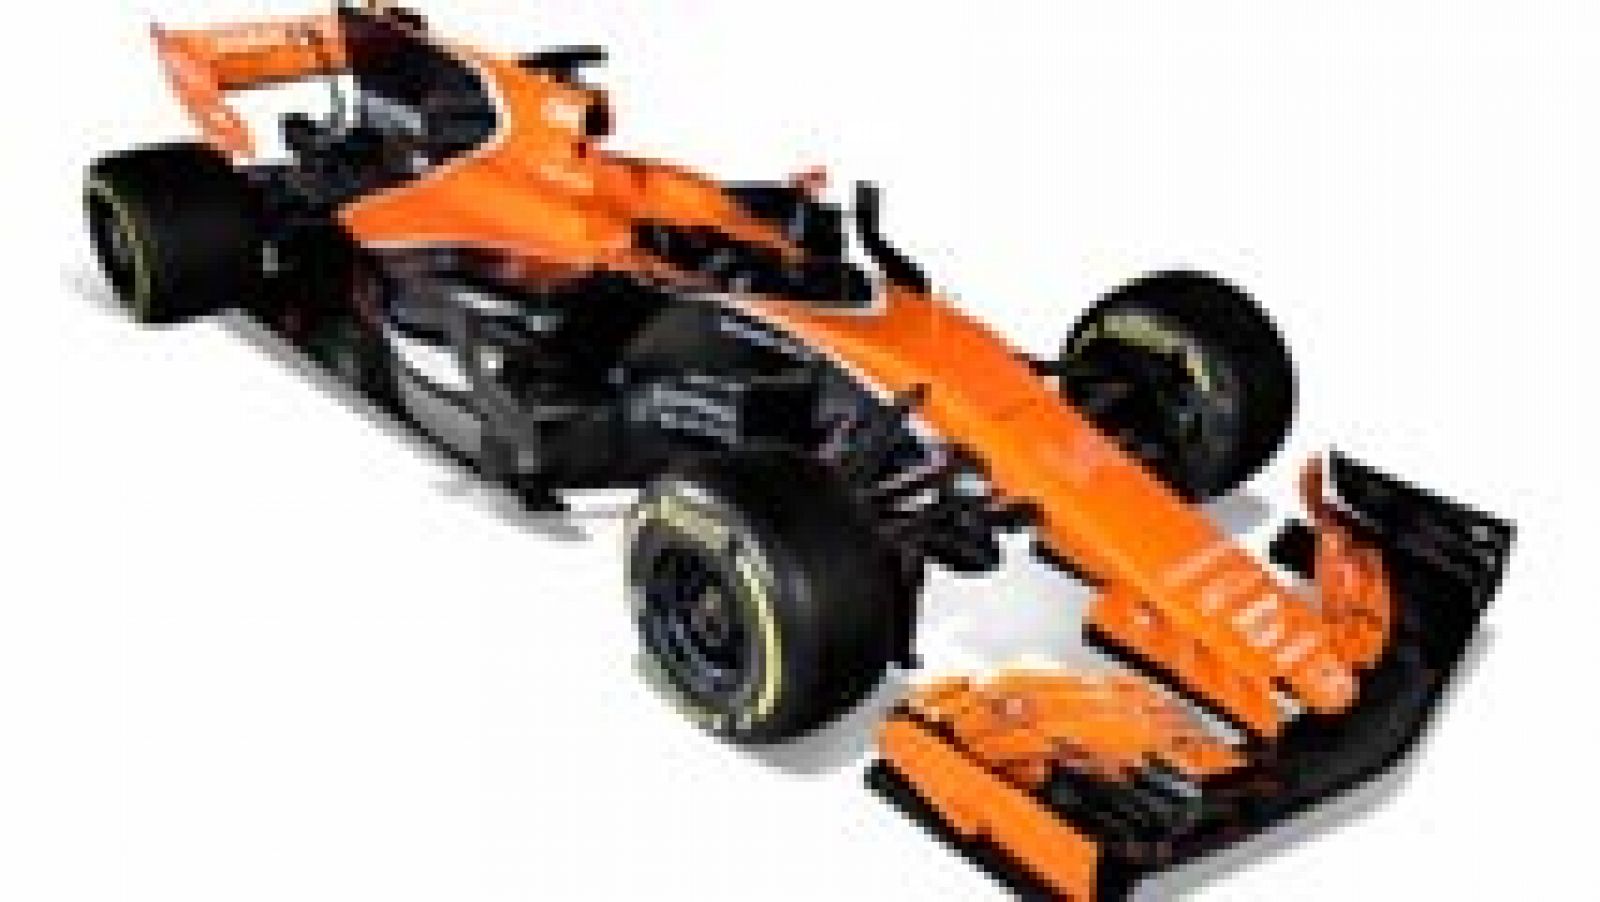 La escudería británica McLaren presentó en su sede de Woking (suroeste de la capital británica) el MCL32, el nuevo y flamante bólido con el que competirán en el Campeonato del Mundo de Fórmula Uno 2017 el español Fernando Alonso y el belga Stoffel Vandoorne.